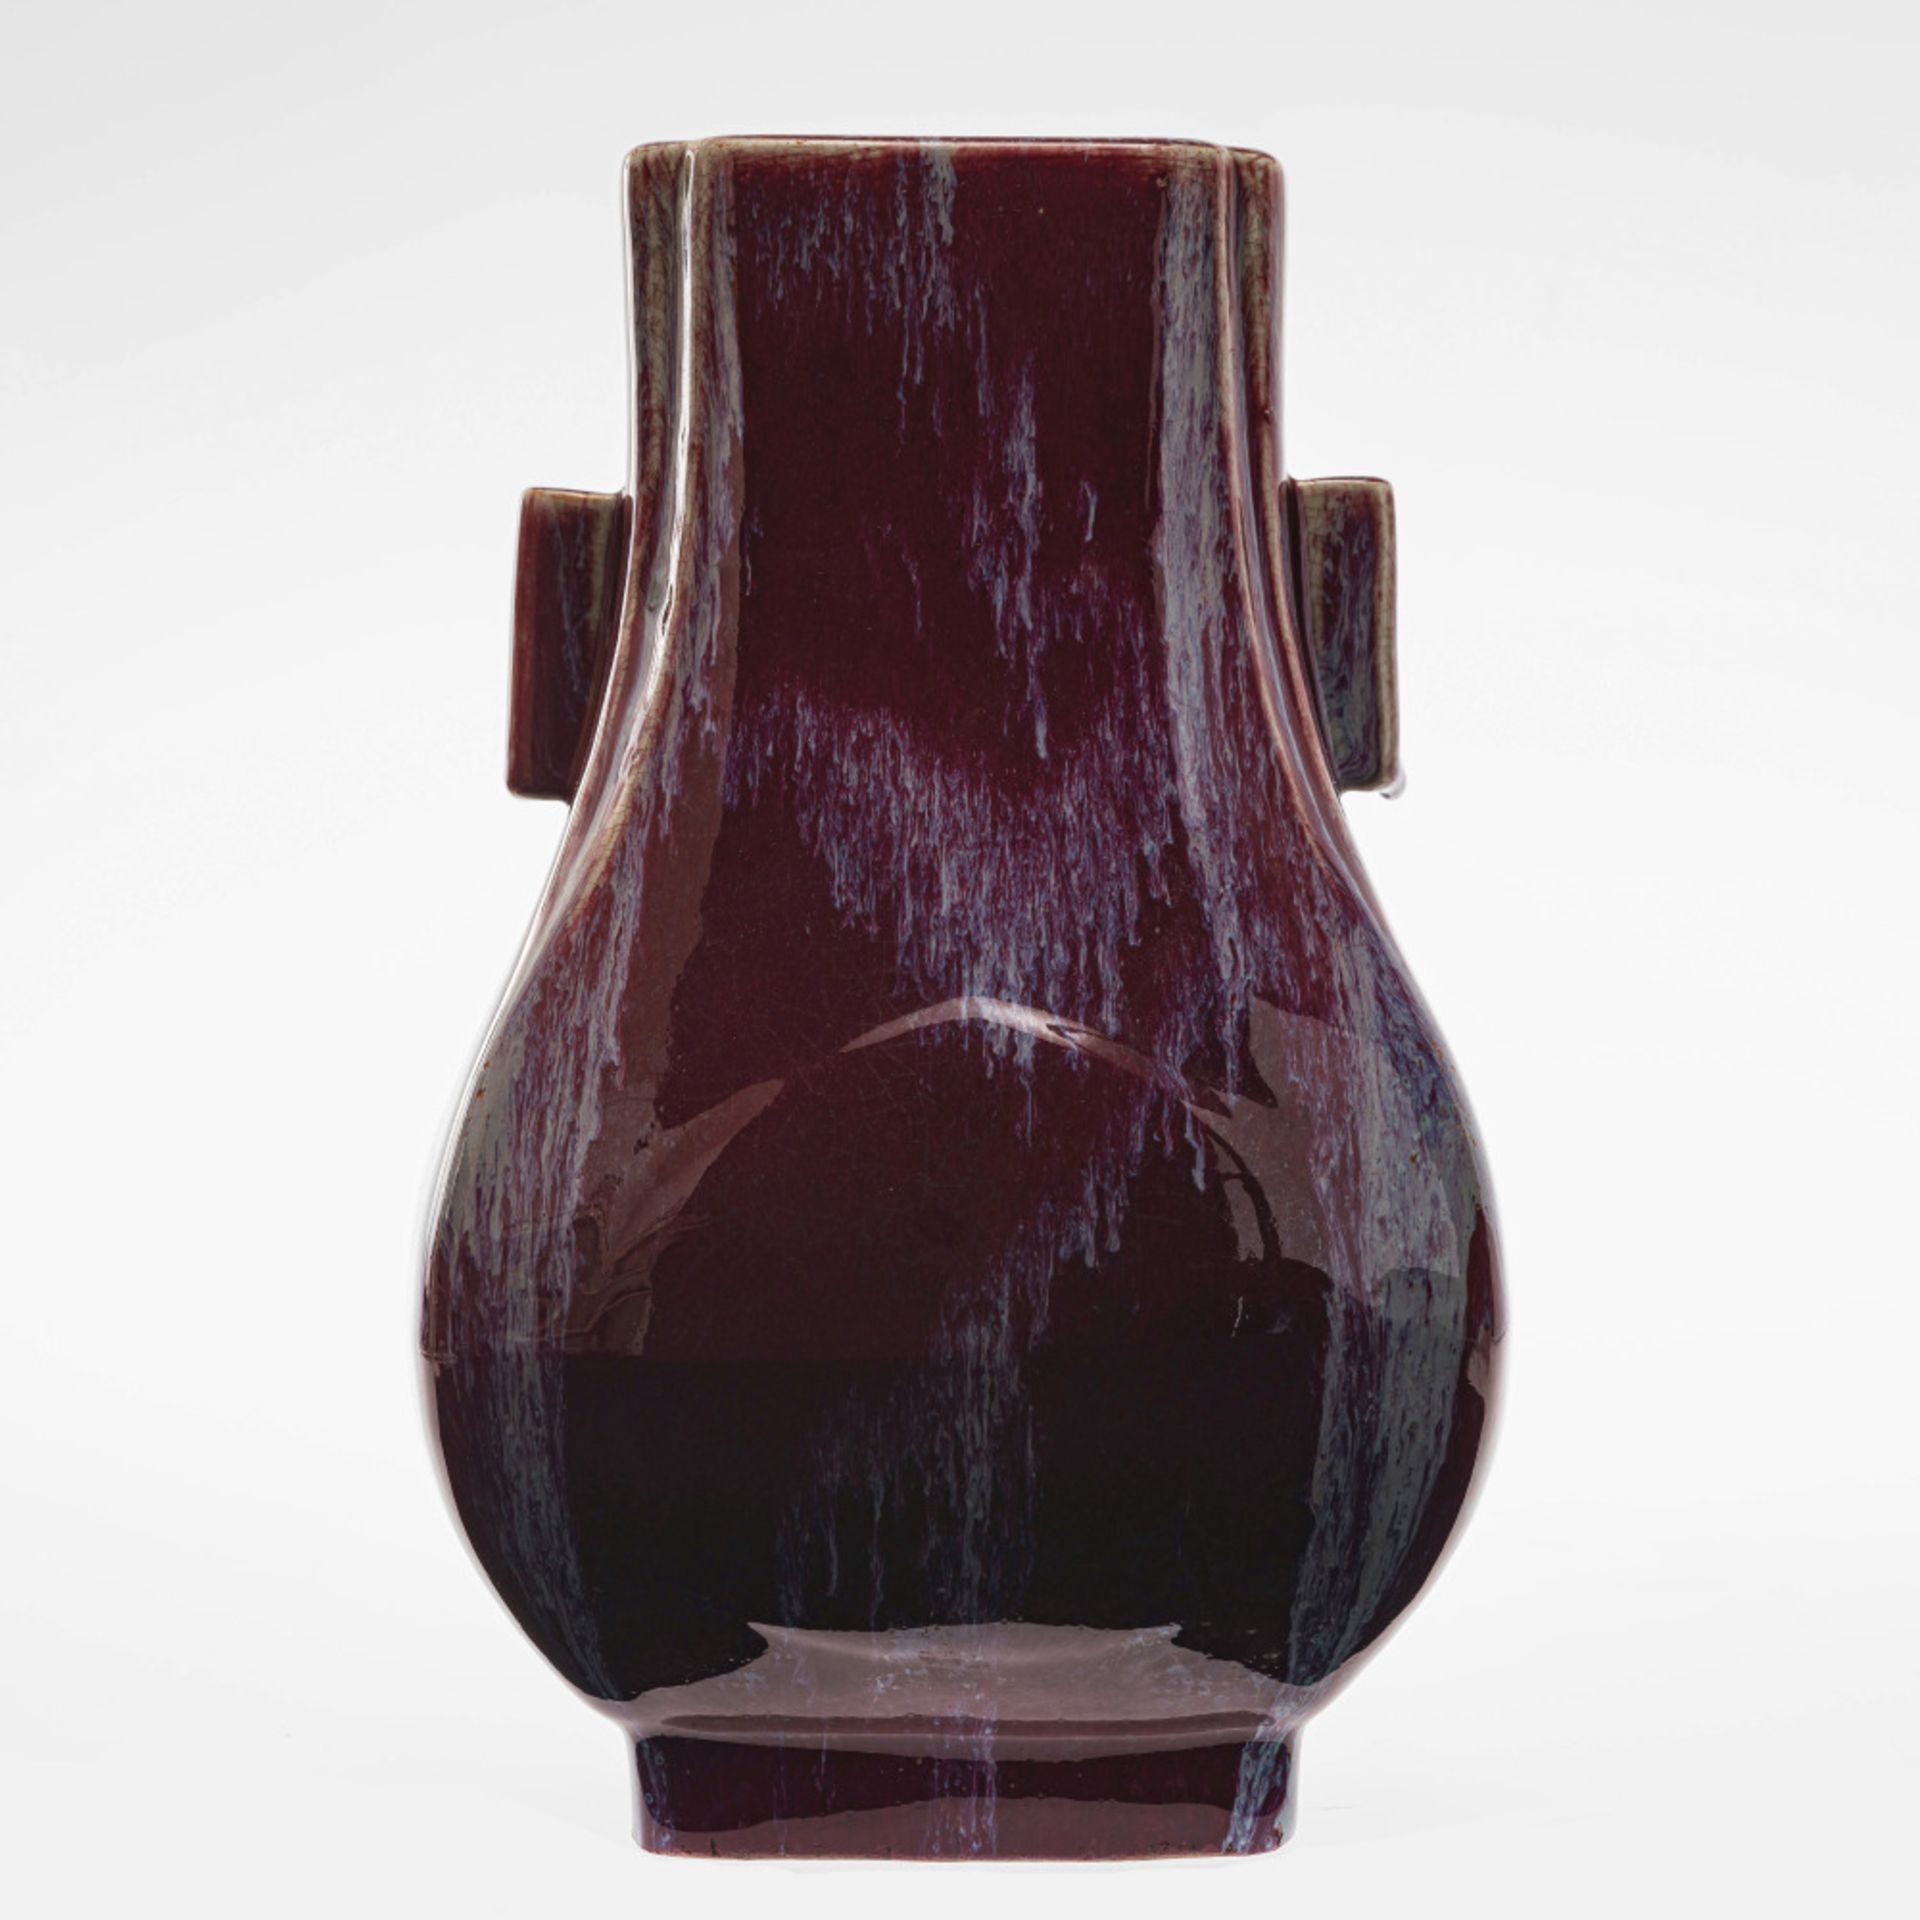 A Hu vase - China, Qing, 1850 - 1861